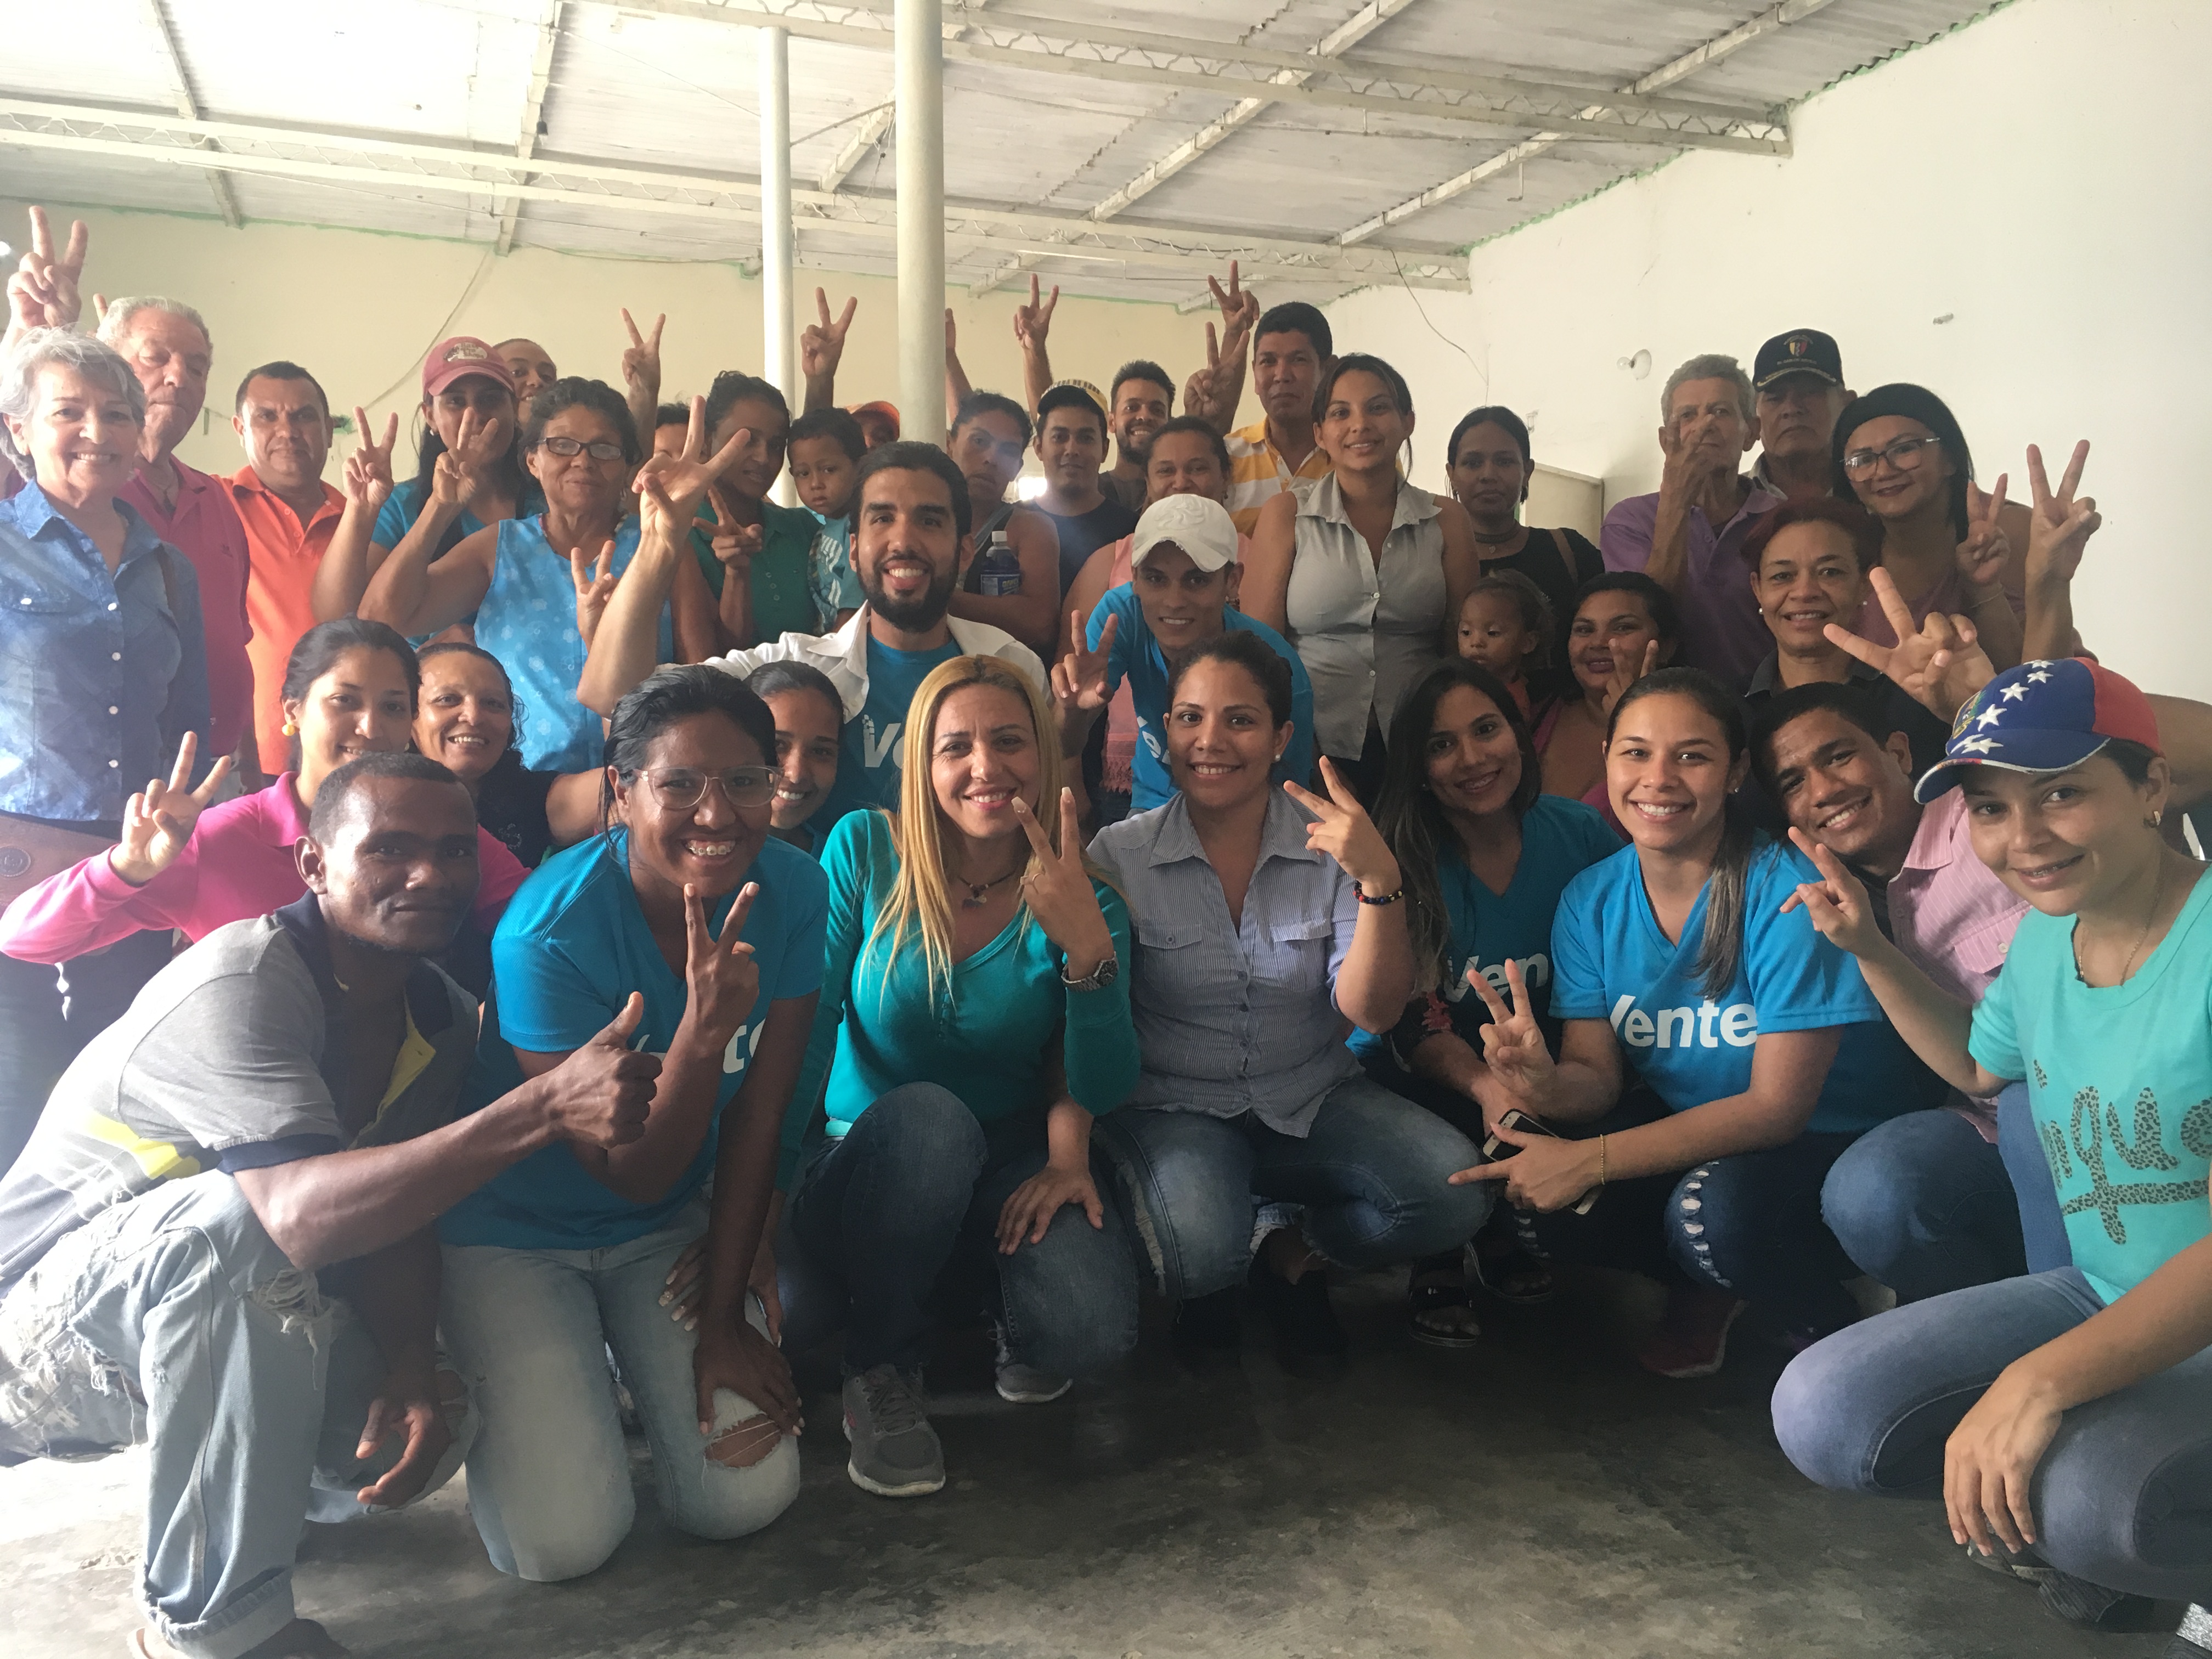 Vente Venezuela funda dos nuevos Colegios Ciudadanos en el estado Guárico